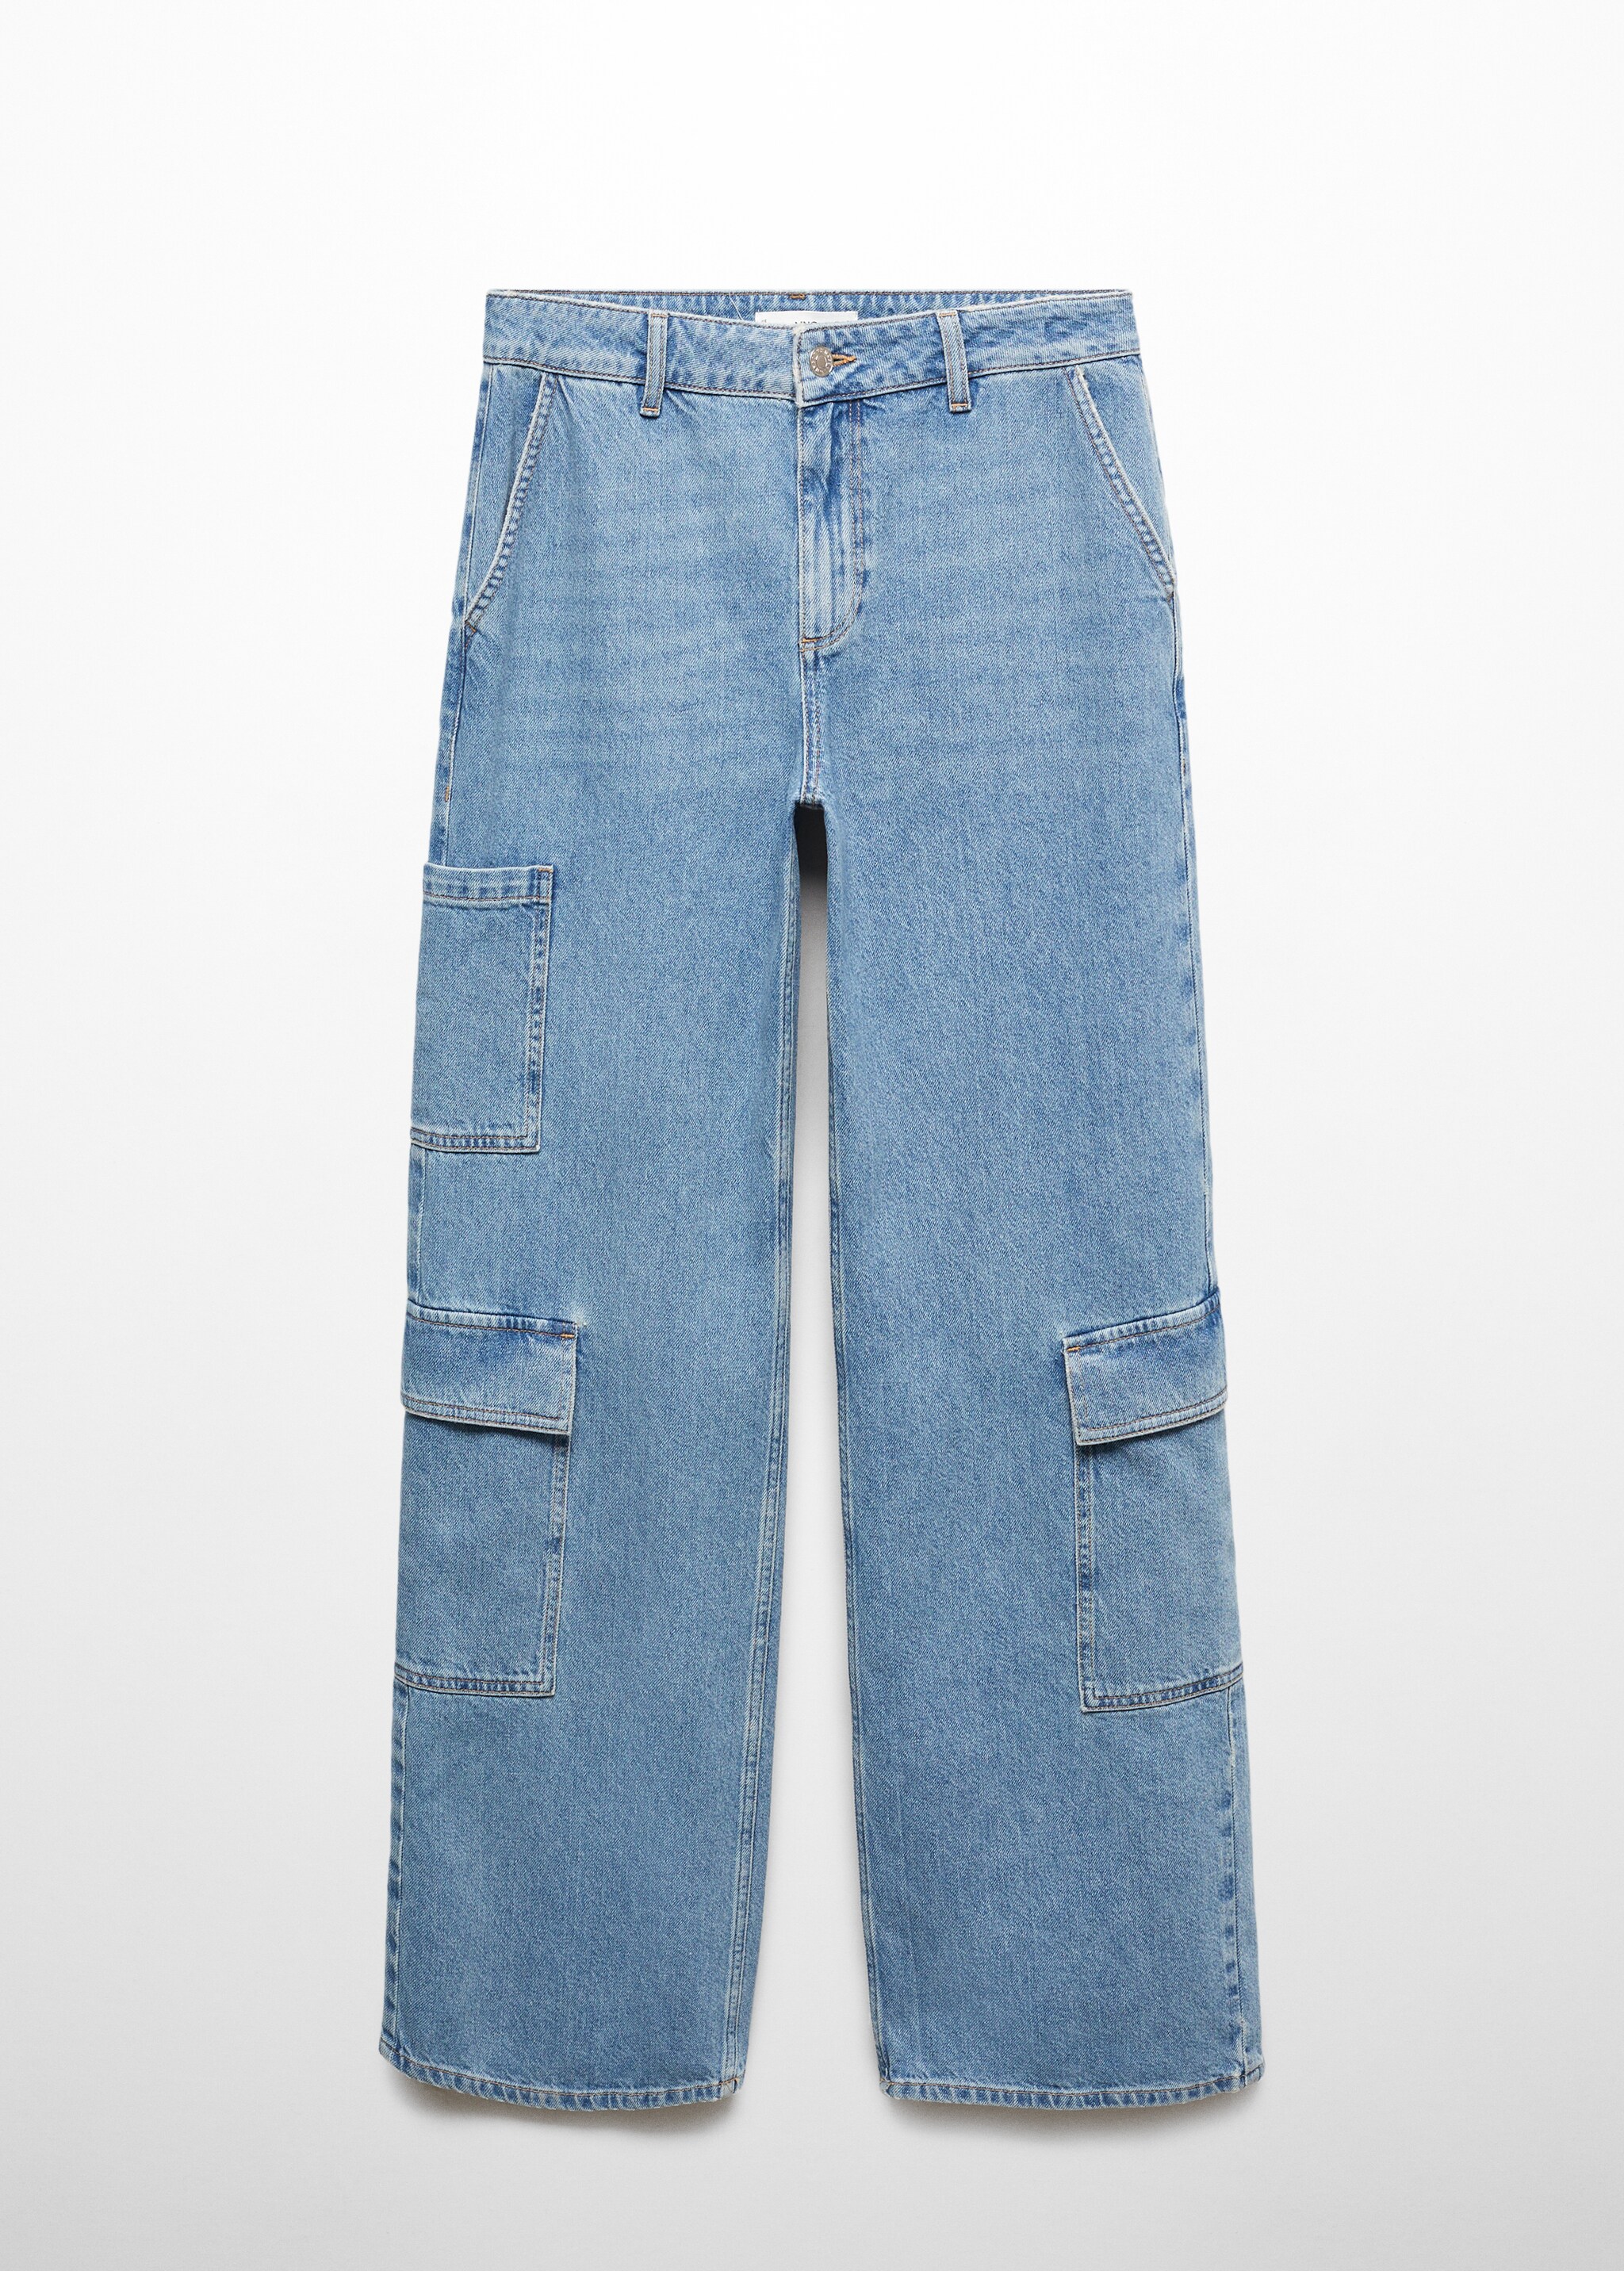 Jeans loose cargo tasche - Articolo senza modello